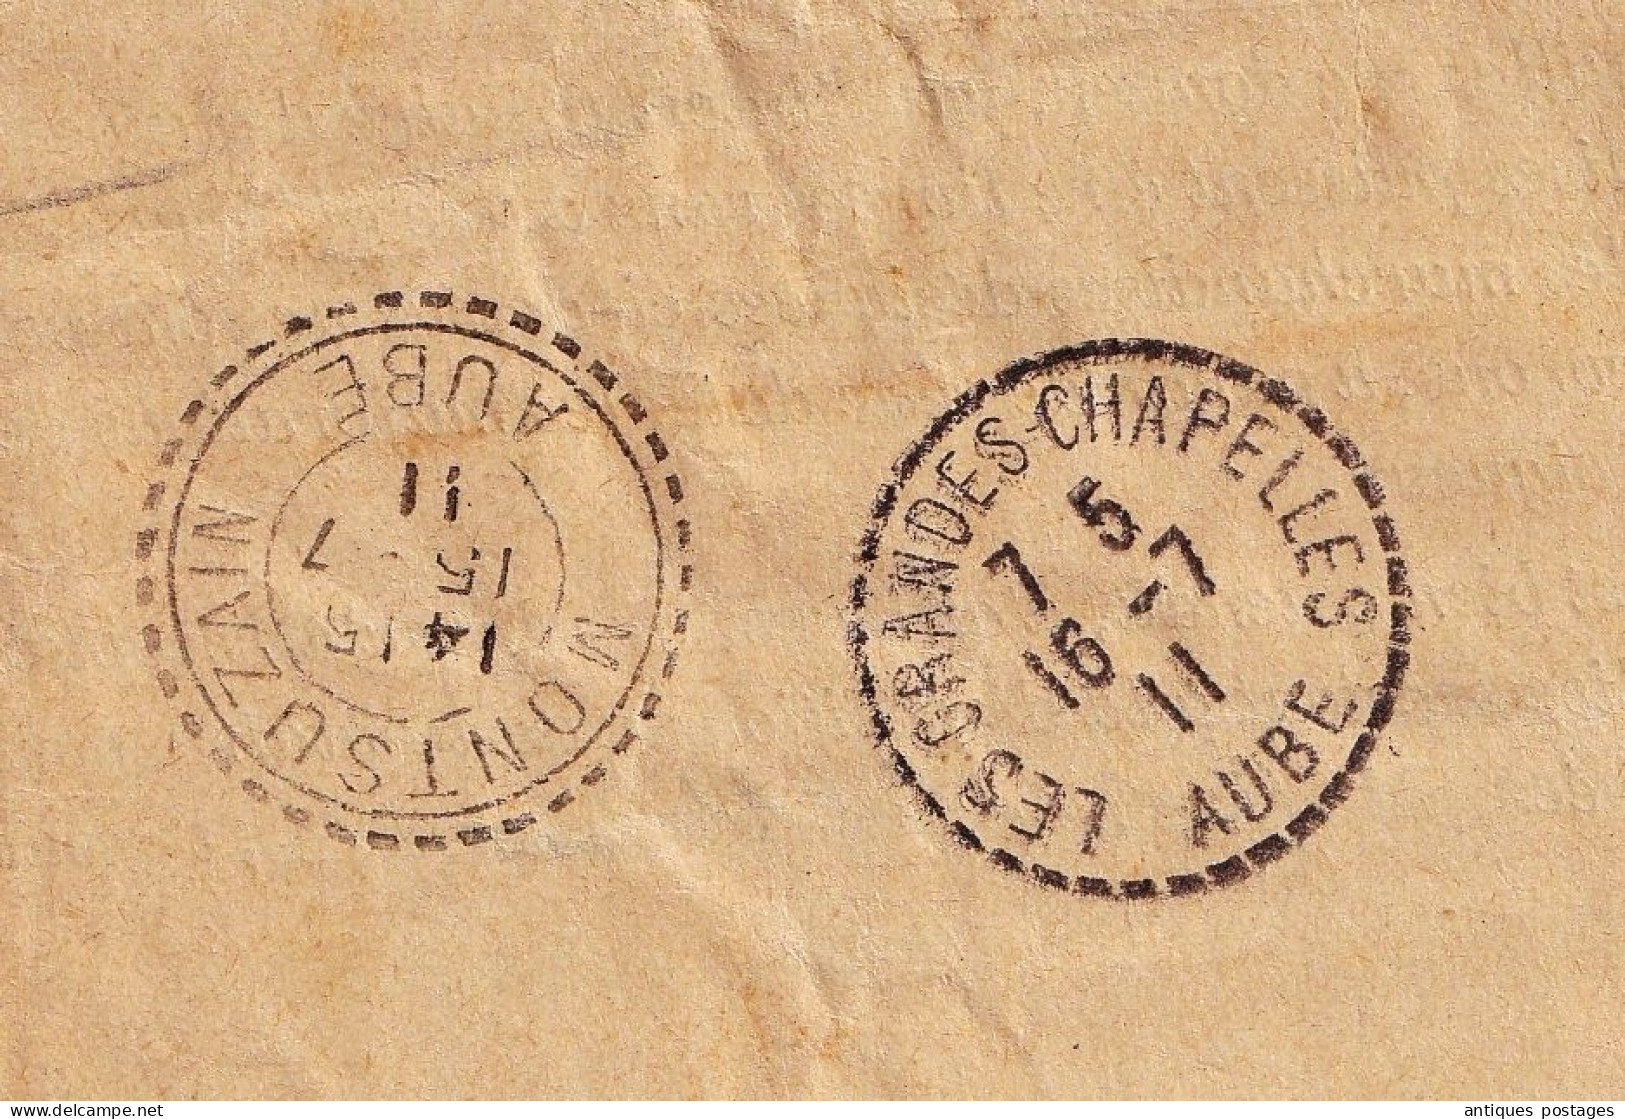 Lettre 1911 Chemin de Fer de Paris à Orléans Les Grandes Chapelles Montsuzian Aube Cachet Convoyeur Argent Gien